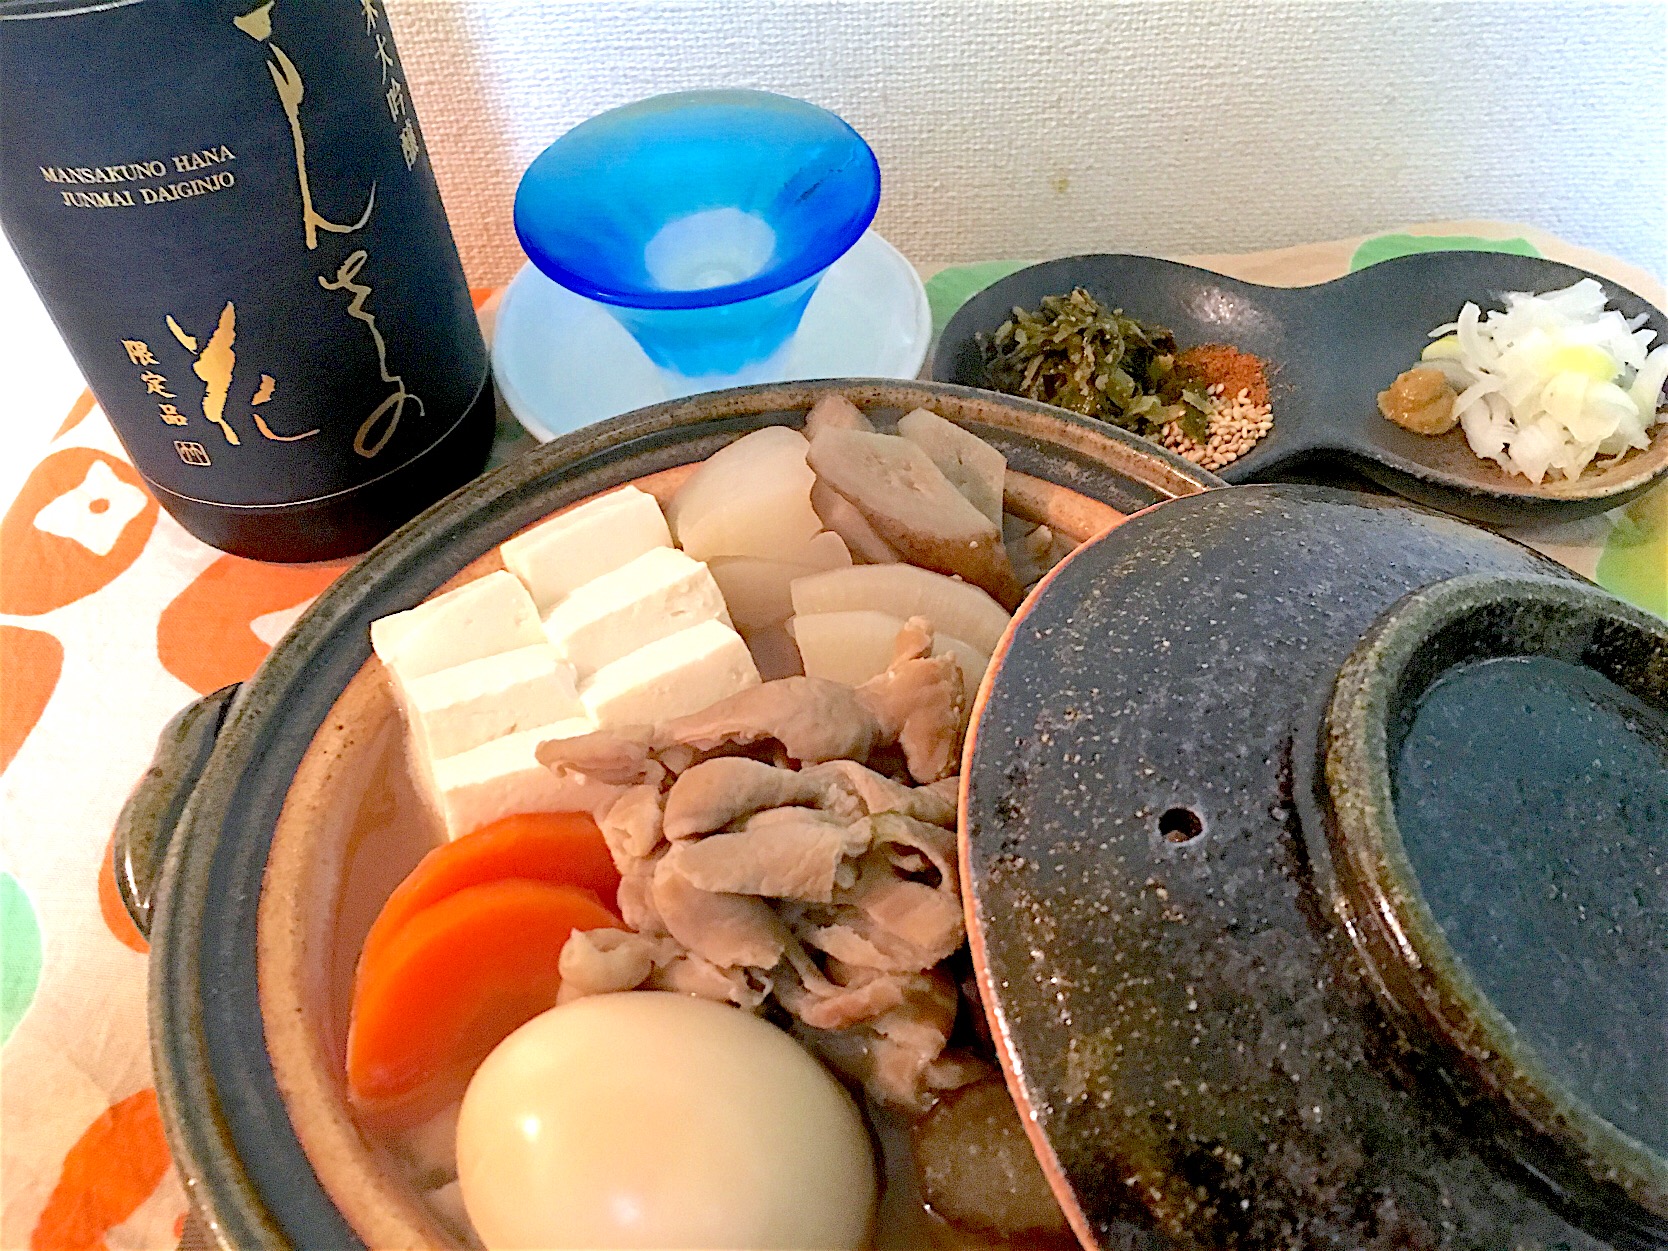 柳川鍋でモツ煮
5種の薬味
まんさくの花 純米大吟醸 袋吊り（秋田）